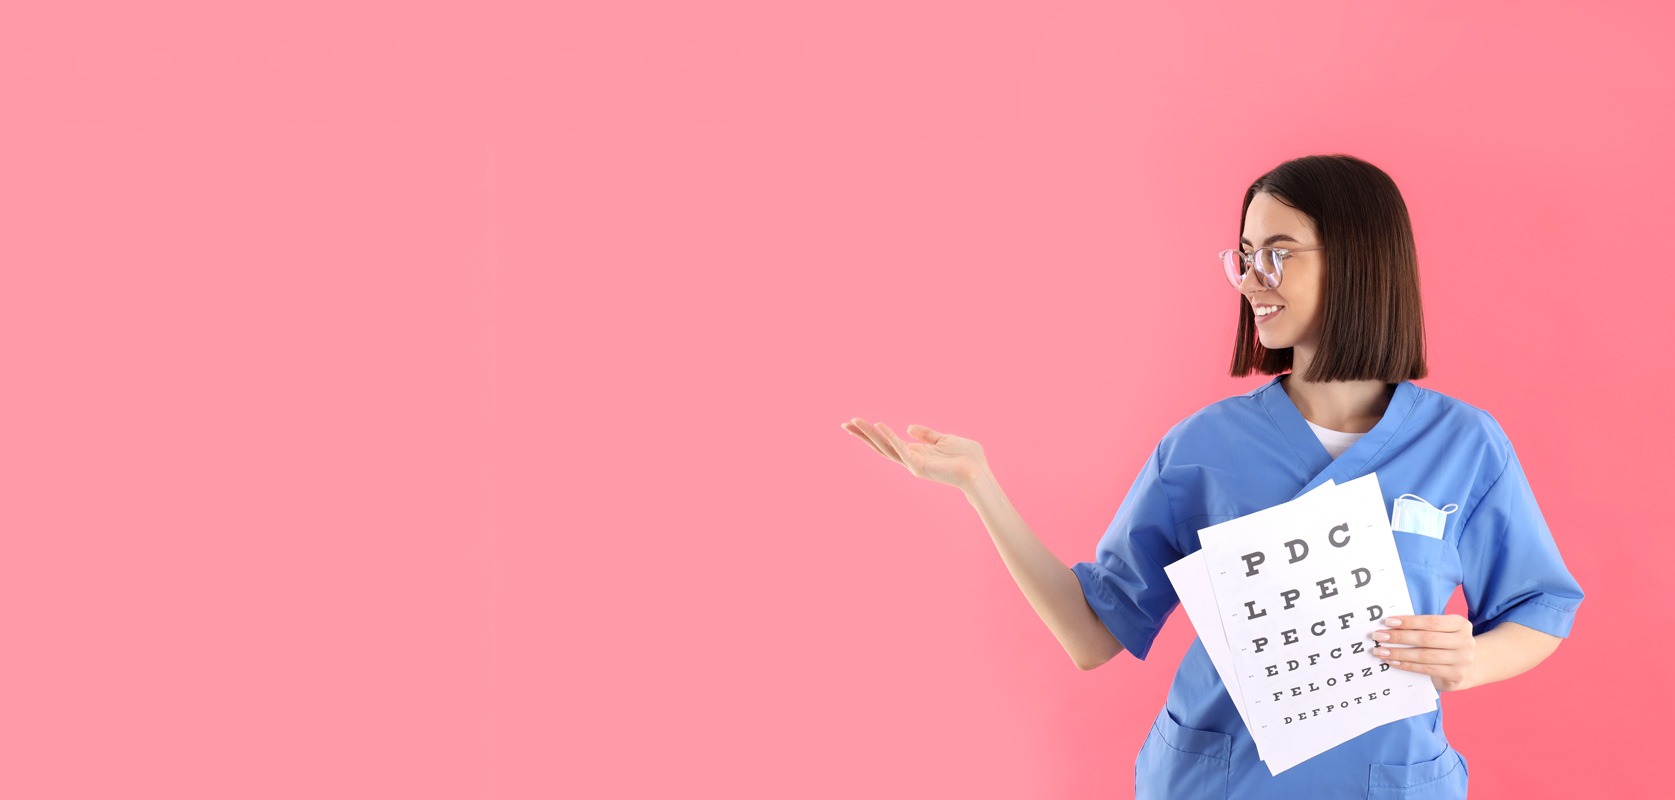 Imagen enfermera señalando con la mano